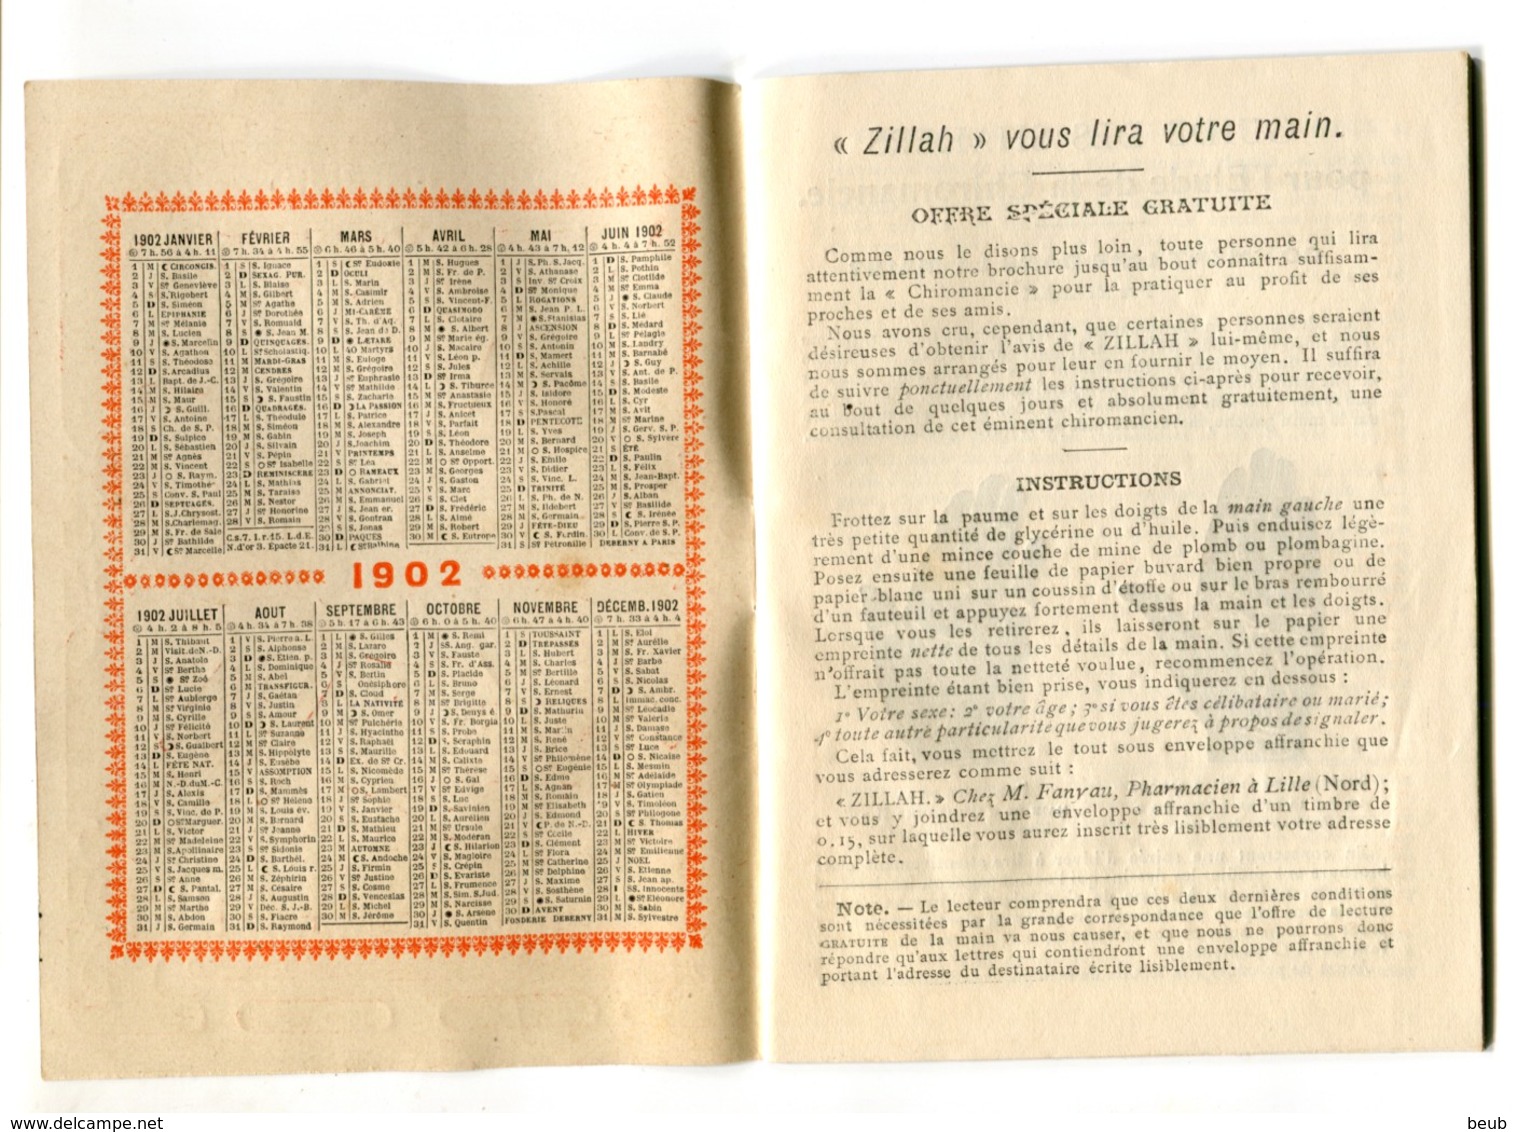 V Shakers Revue - Calendrier 1902 - Guide Pour L'étude De La Chiromancie (4 Scans) - Autres & Non Classés